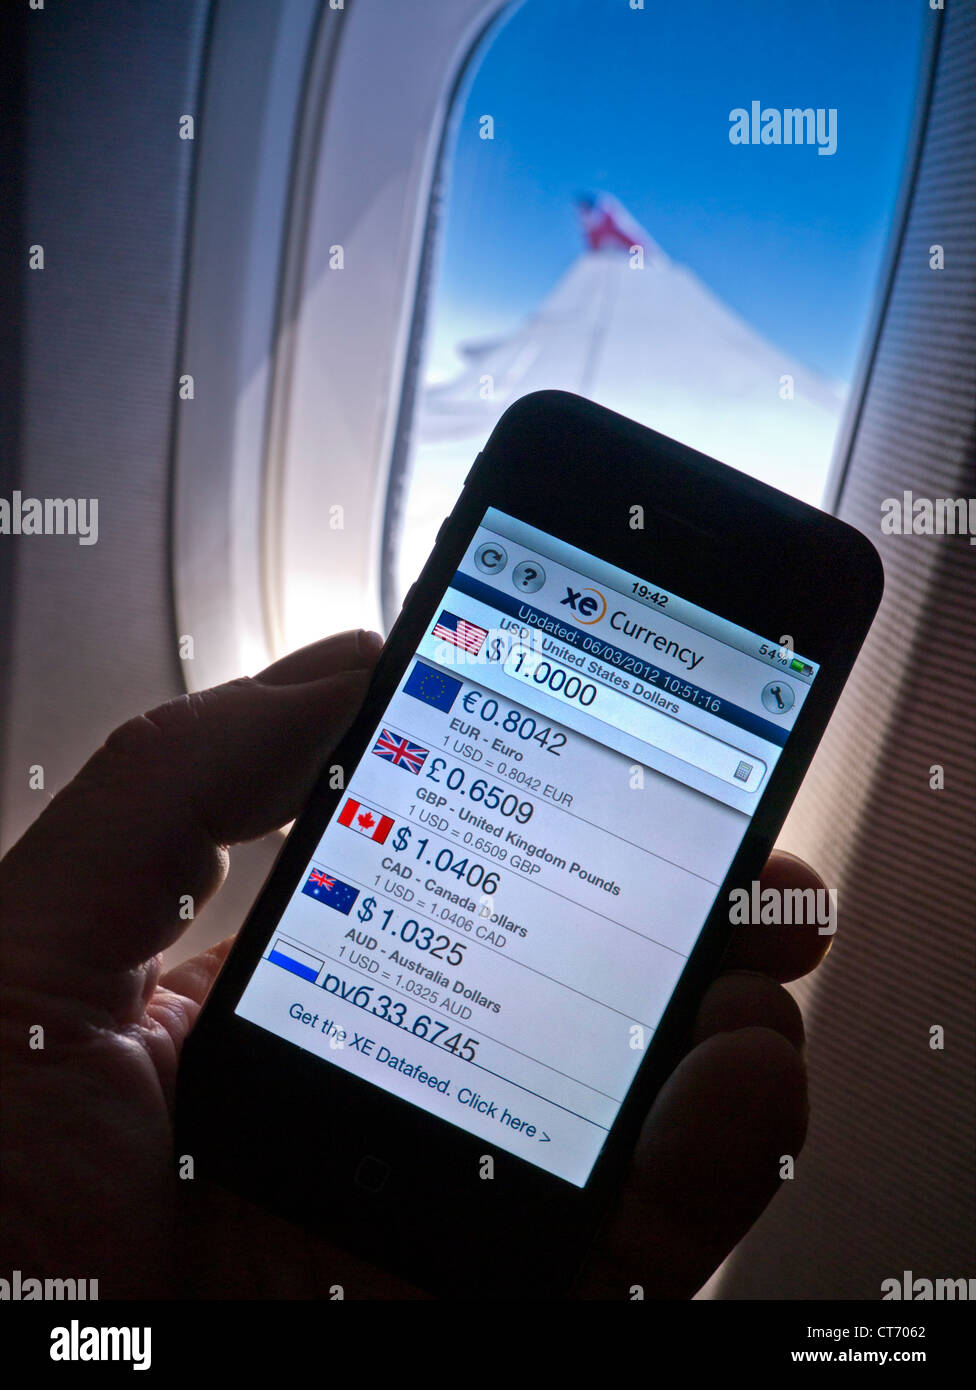 DOLLAR PFUND & internationale historische 2012 Wechselkurse in-Flight WiFi auf Smartphone-Bildschirm mit Kabine Fensterflügel und blauen Himmel hinter Stockfoto